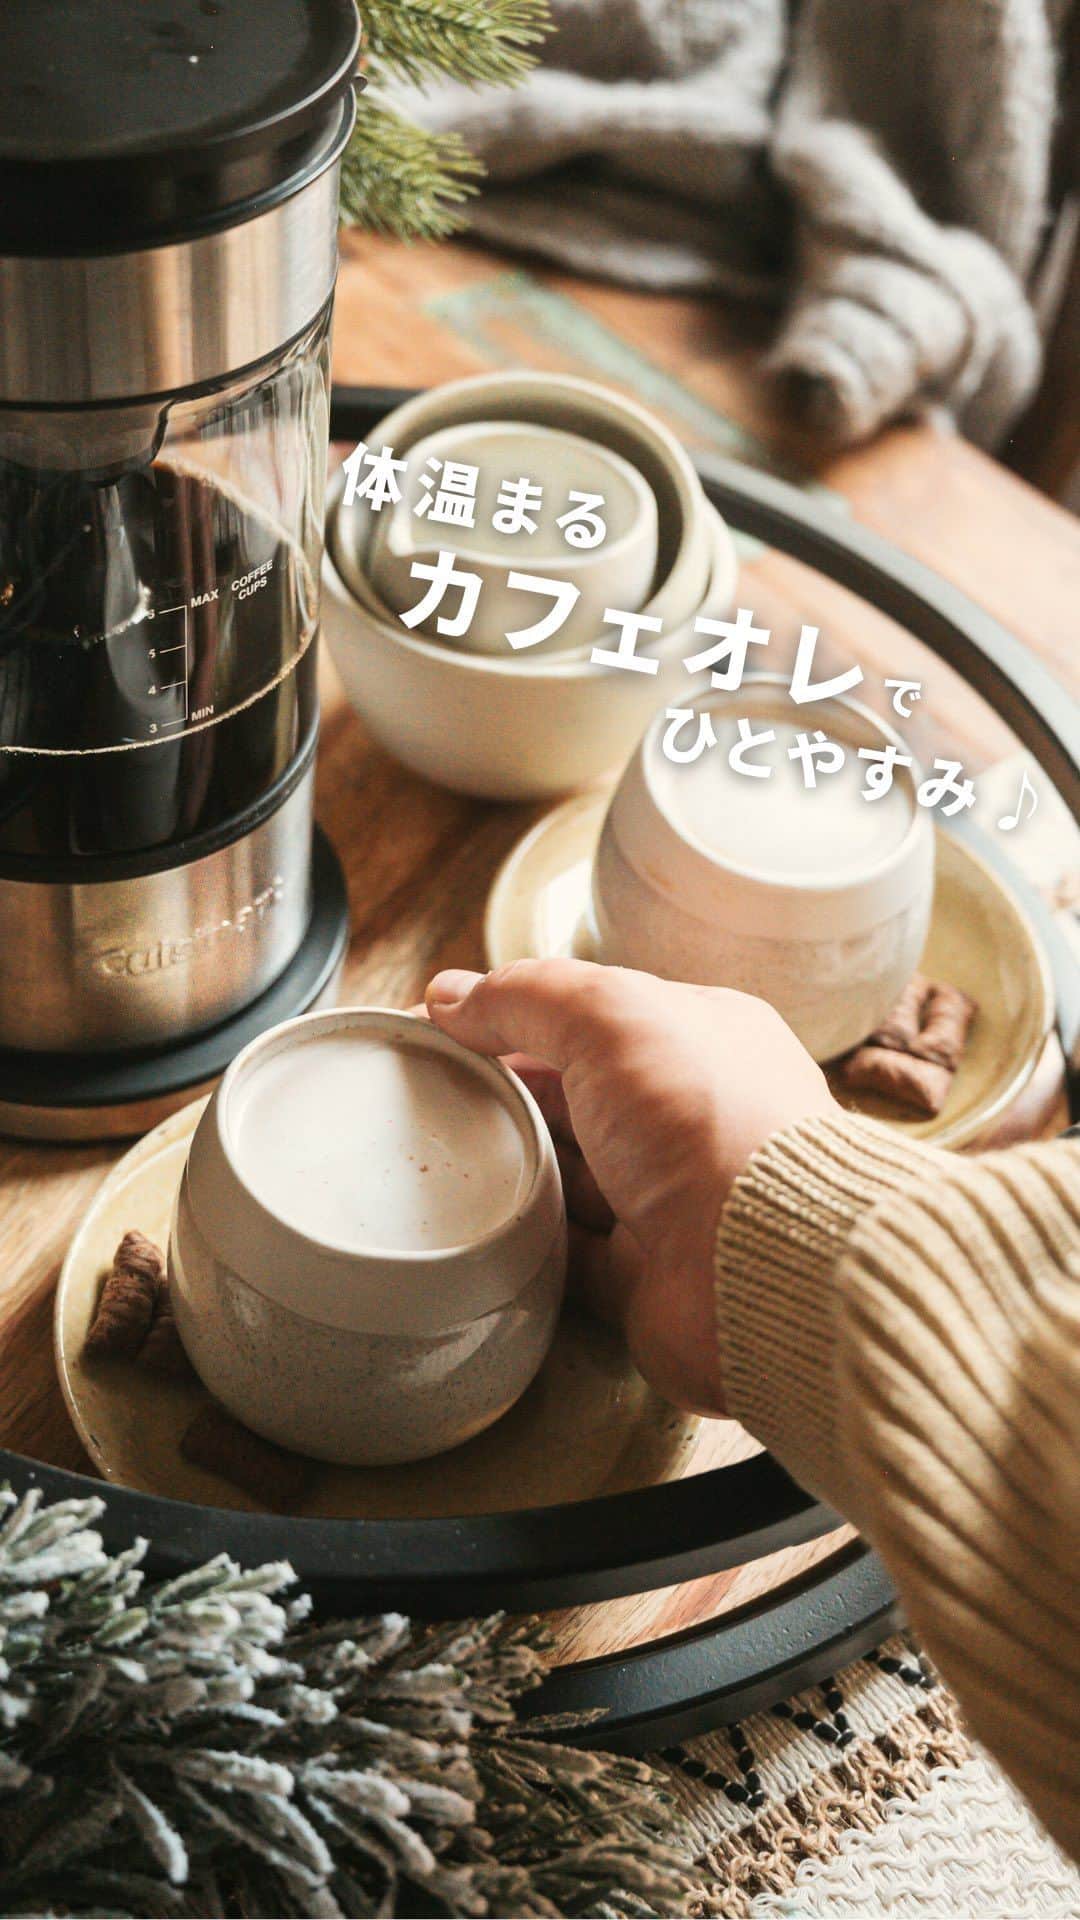 Cuisinart(クイジナート)ジャパン公式アカウントのインスタグラム：「☕️濃いめのコーヒーで、ホットカフェオレはいかが？   寒い冬に飲みたい！ 体温まるカフェオレで 心身ともに体ぽかぽか、リラックス✨   クイジナート「ファウンテン コーヒーメーカー」で、 コーヒーを濃いめに淹れて、ホットミルクをそそげば 簡単に美味しいカフェオレも楽しめます。   お湯を下から上へと循環させながらコーヒーを抽出。 抽出時間と温度を変えることで、 ライトな味わいから濃い目の味わいまで お好みのコーヒーが作れますよ😊   ・。・。・。・。・。・ 📷Photo：  @yutaokashi   ◽️Item：ファウンテン コーヒーメーカー   🔍FCC-1KJ ・。・。・。・。・。・   ーーーーー クイジナート公式HPでは、毎日の料理が楽しくなる様々な製品情報やレシピを公開中♪ 詳しくはプロフィールのリンクから！ ▶️@cuisine_art ーーーーー   #クイジナート #cuisinart #クイジナートのある生活 #クイジナートLOVE #クイジナートファウンテンコーヒーメーカー #丁寧な暮らし #コーヒー #コーヒーのある暮らし #コーヒーメーカー #コーヒーメーカーのある暮らし #コーヒータイム #電気ケトル #珈琲時間 #コーヒー好き #コーヒーのある生活 #珈琲のある生活 #珈琲日記 #コーヒー部 #おうちカフェ #ひとやすみ #コーヒーのある空間 #カフェオレ #コーヒーマニア #珈琲好き #コーヒー好きと繋がりたい #ホットカフェオレ #カフェオレ好き #コーヒー好き #カフェラテ #カフェラテ好き」